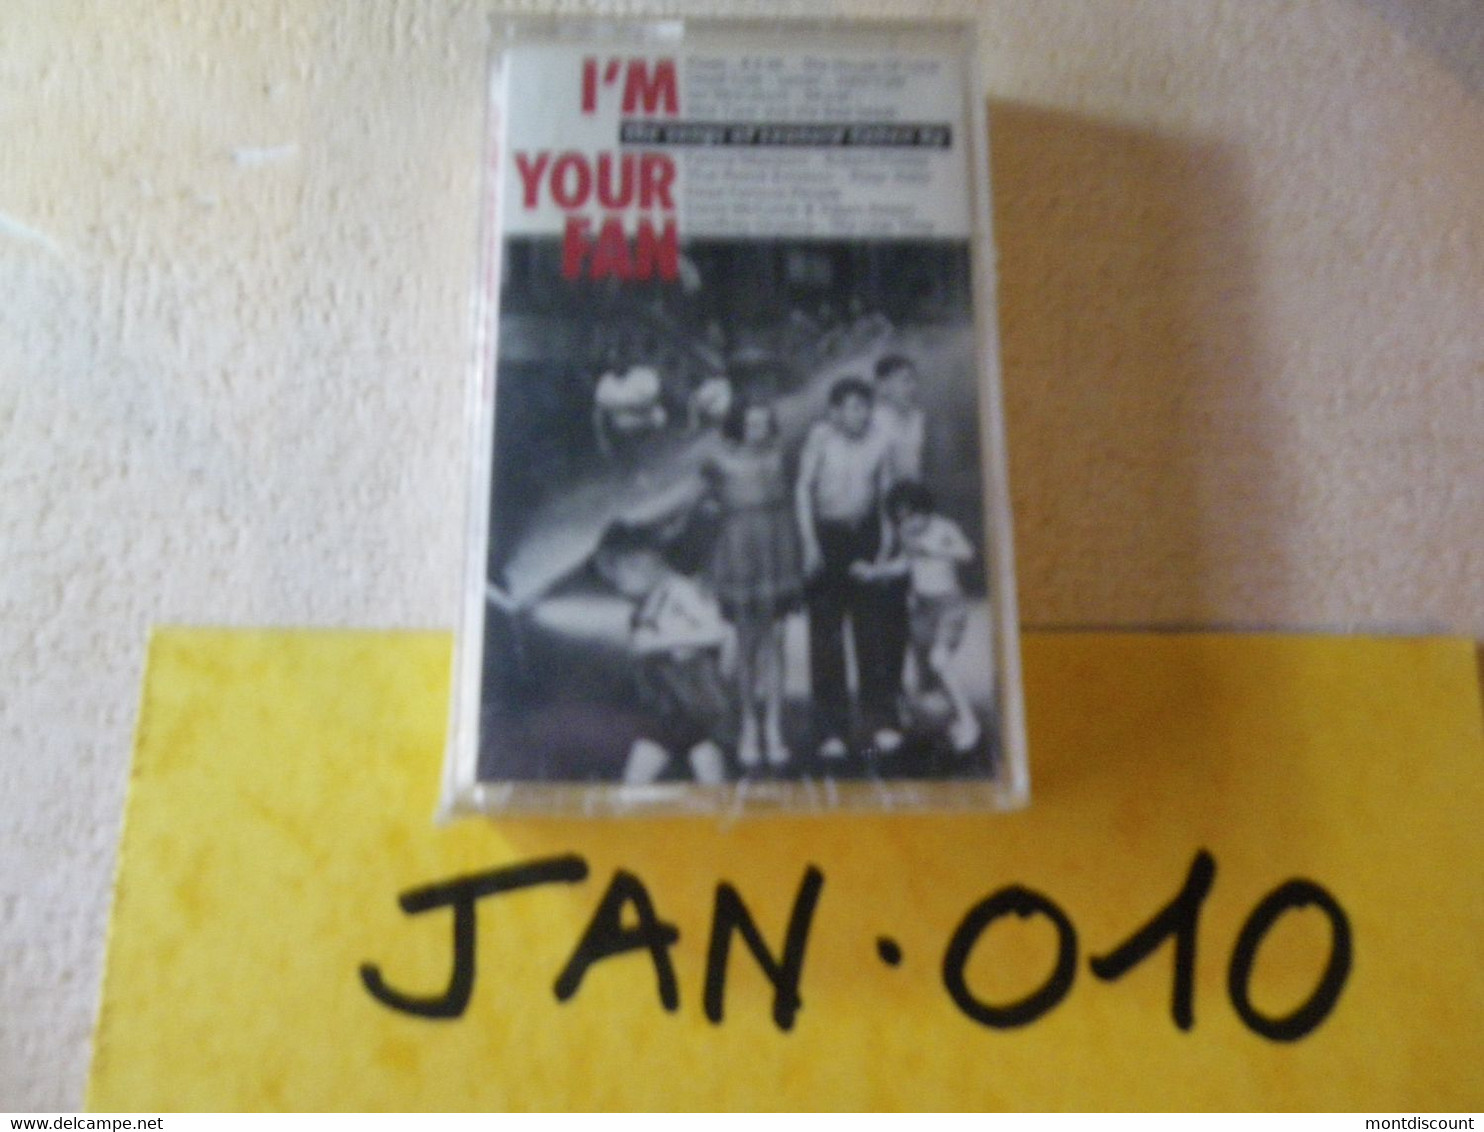 I'M YOUR MAN LEONARD COHEN (ré-interprété) K7 AUDIO EMBALLE D'ORIGINE JAMAIS SERVIE... VOIR PHOTO... (JAN 010) - Cassettes Audio